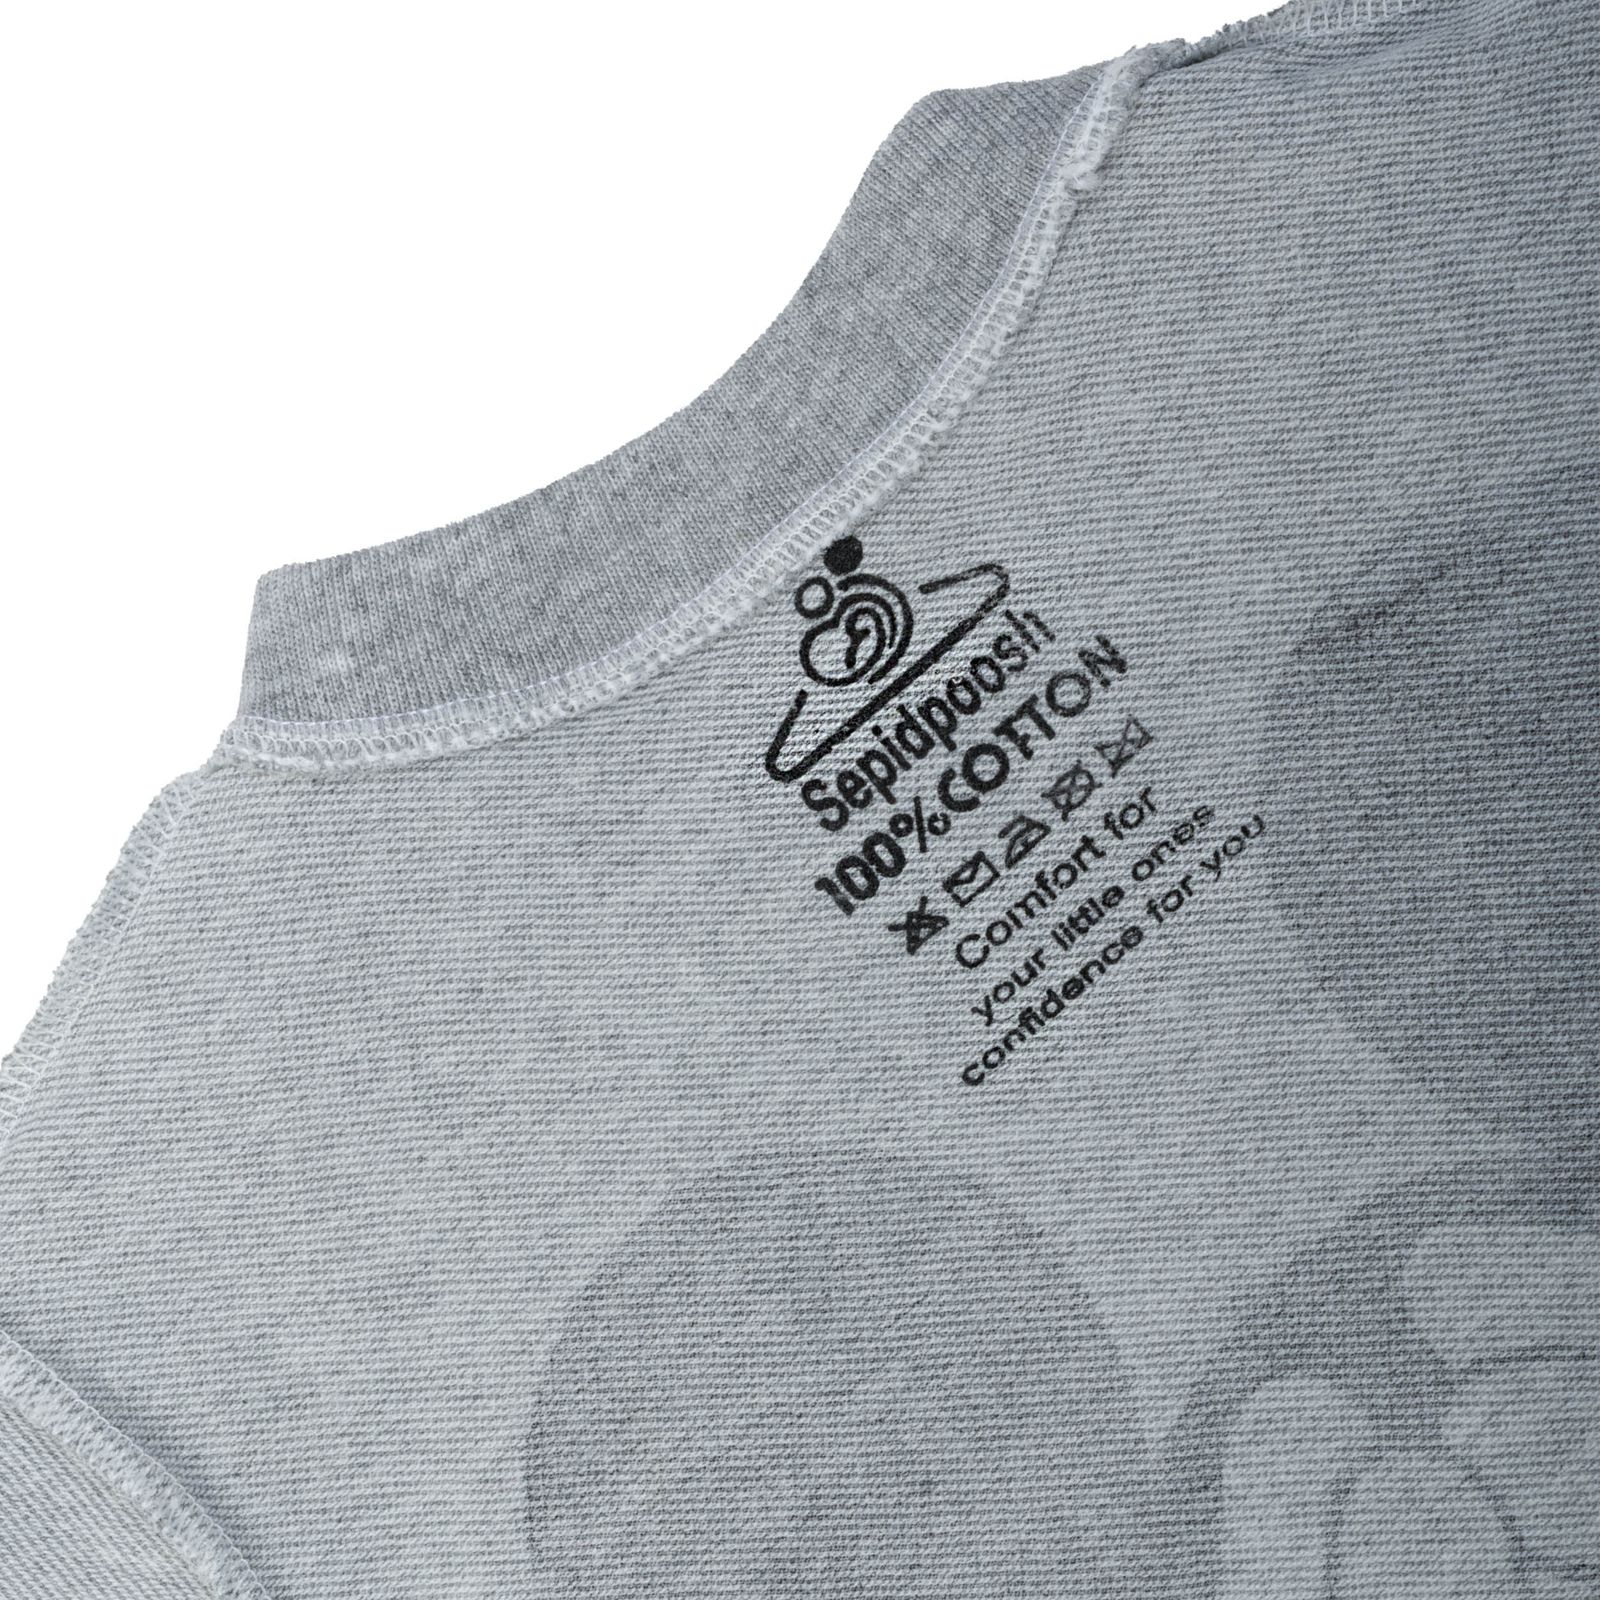 ست تی شرت آستین بلند و شلوار بچگانه سپیدپوش مدل میکی ماوس کد 1402341 -  - 2